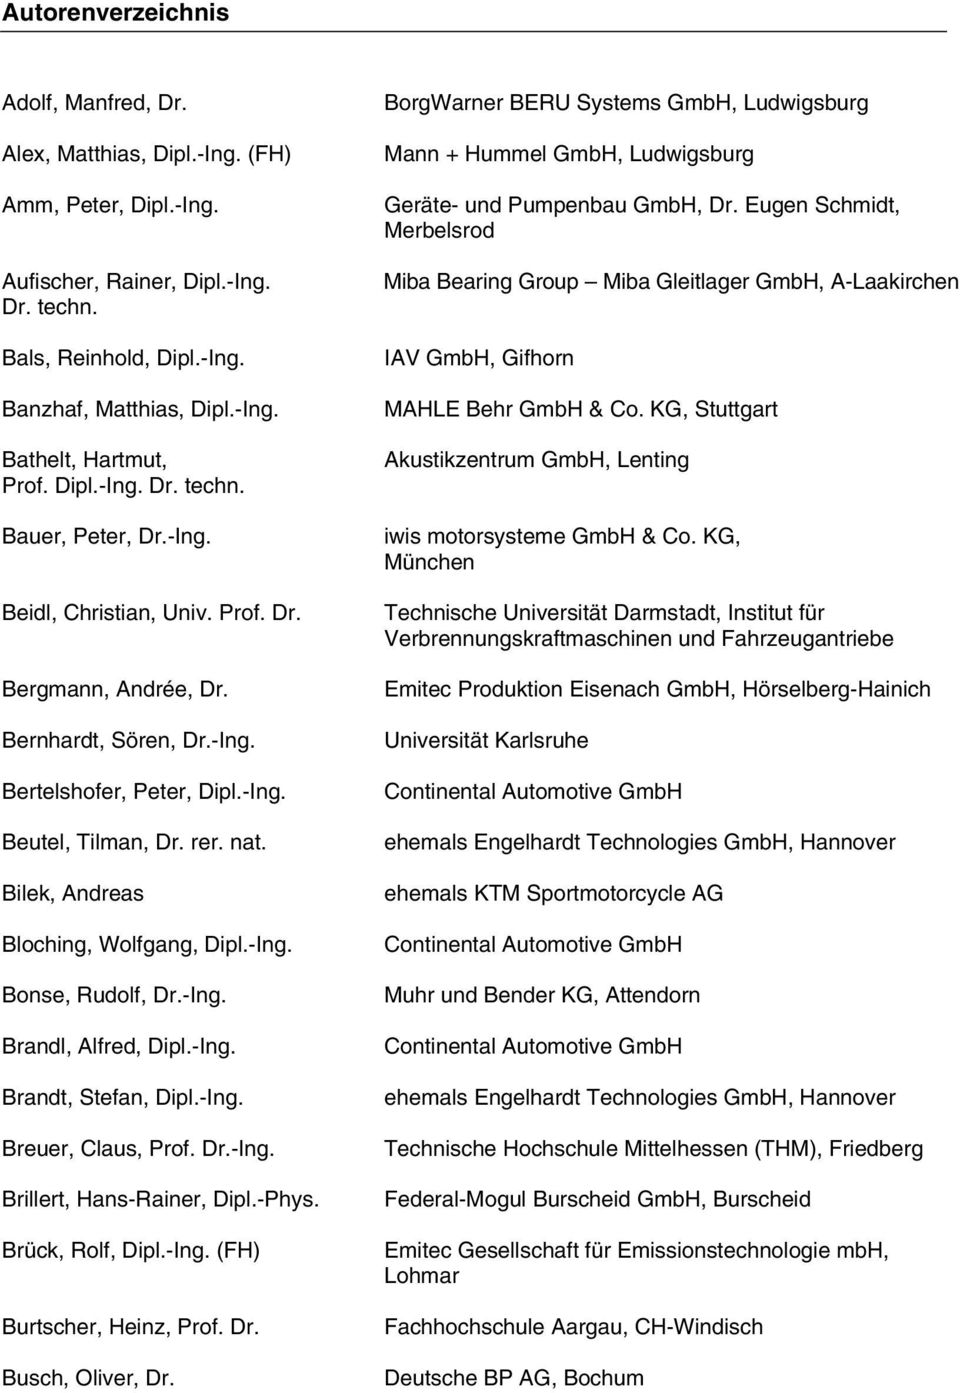 Bilek, Andreas Bloching, Wolfgang, Dipl.-Ing. Bonse, Rudolf, Dr.-Ing. Brandl, Alfred, Dipl.-Ing. Brandt, Stefan, Dipl.-Ing. Breuer, Claus, Prof. Dr.-Ing. Brillert, Hans-Rainer, Dipl.-Phys.